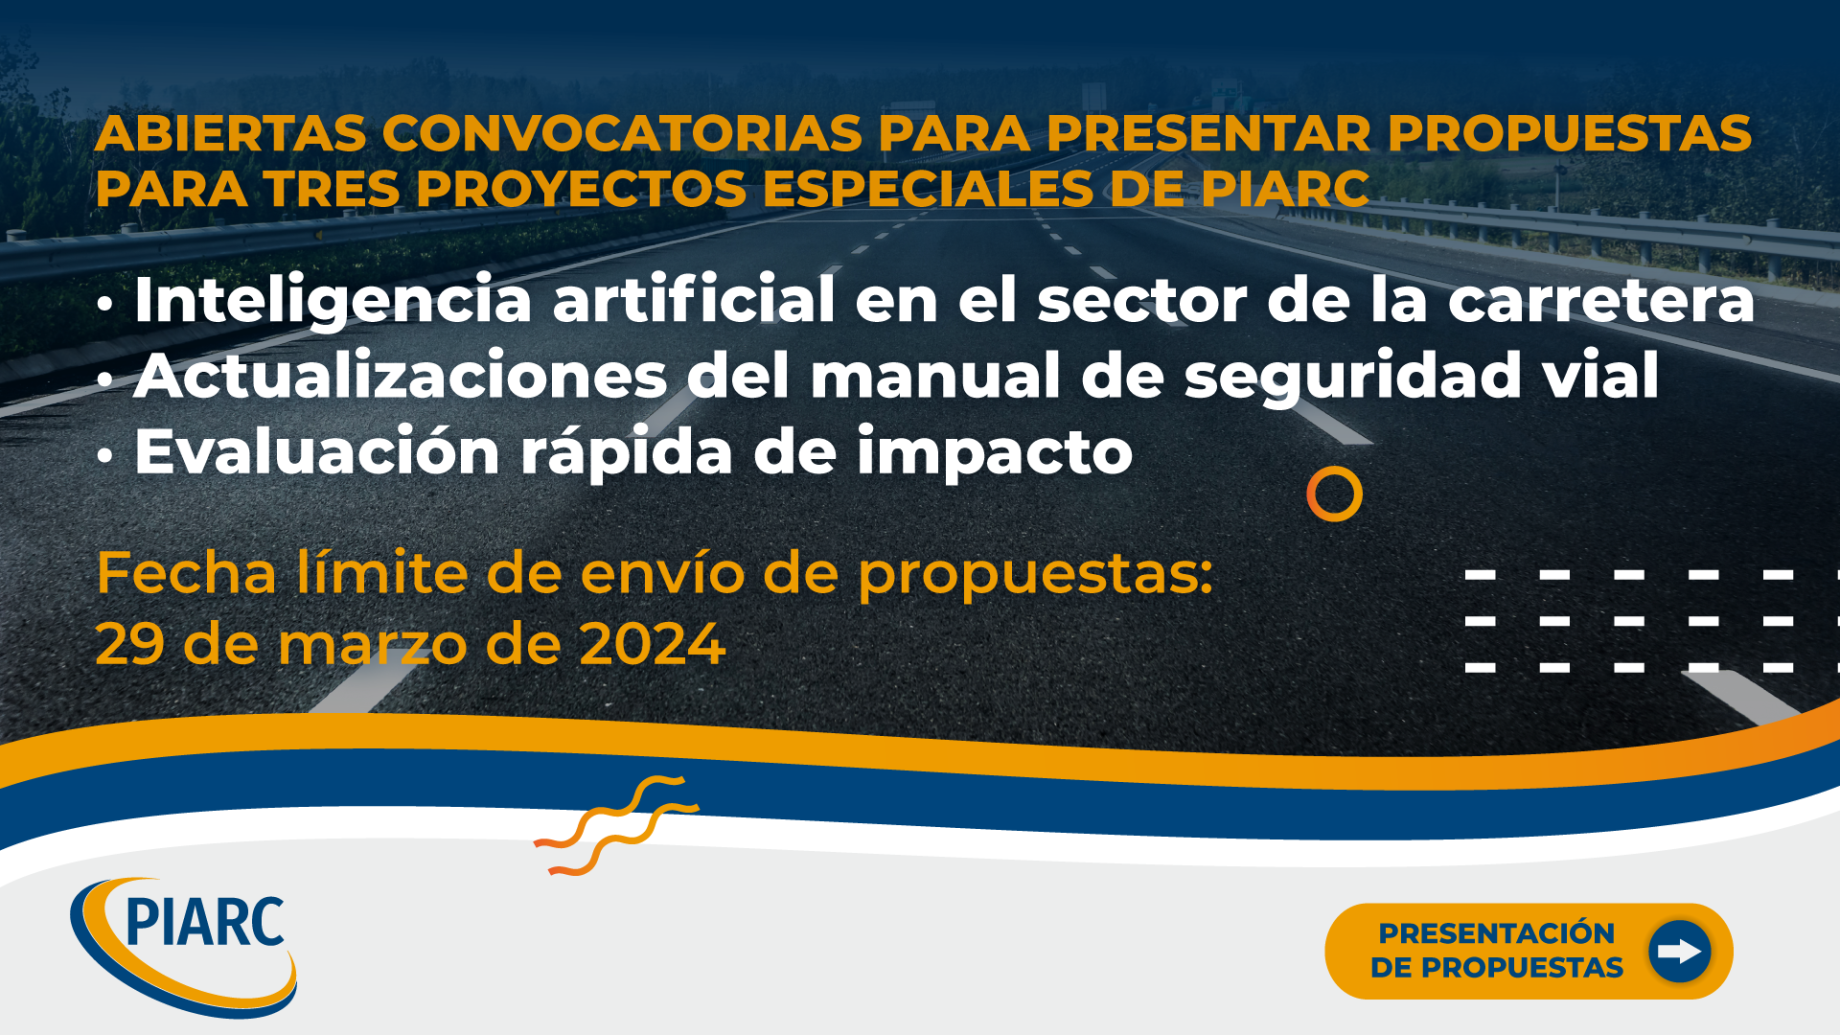 Proyectos especiales de PIARC: ¡Abierta la convocatoria de propuestas!